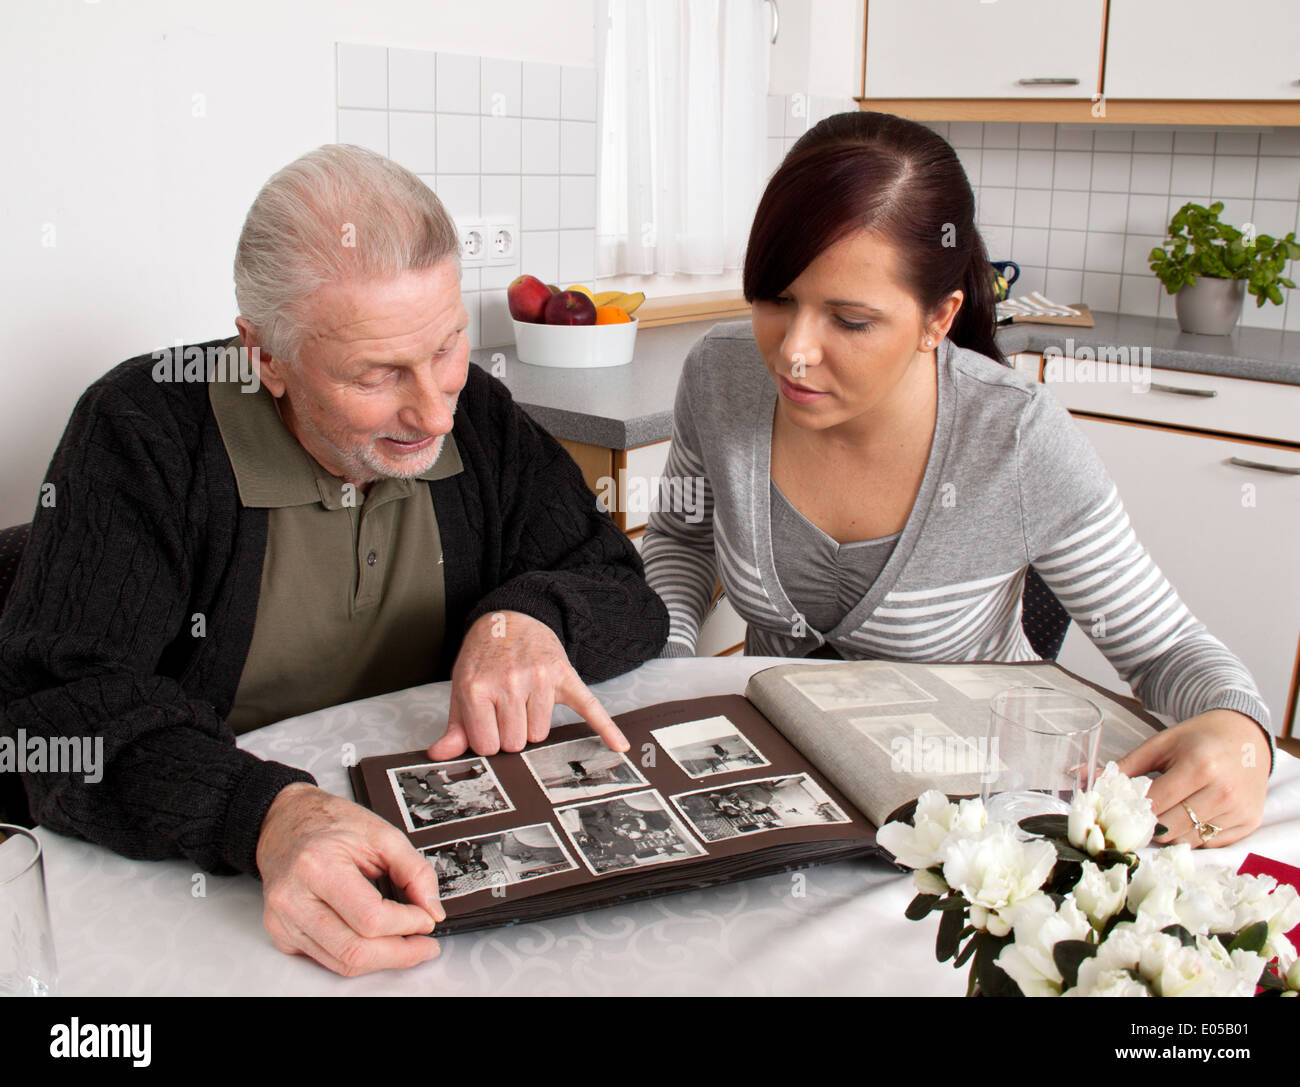 A young woman looks at a photo album with senior citizens, Eine junge Frau schaut mit Senioren ein Fotoalbum an Stock Photo